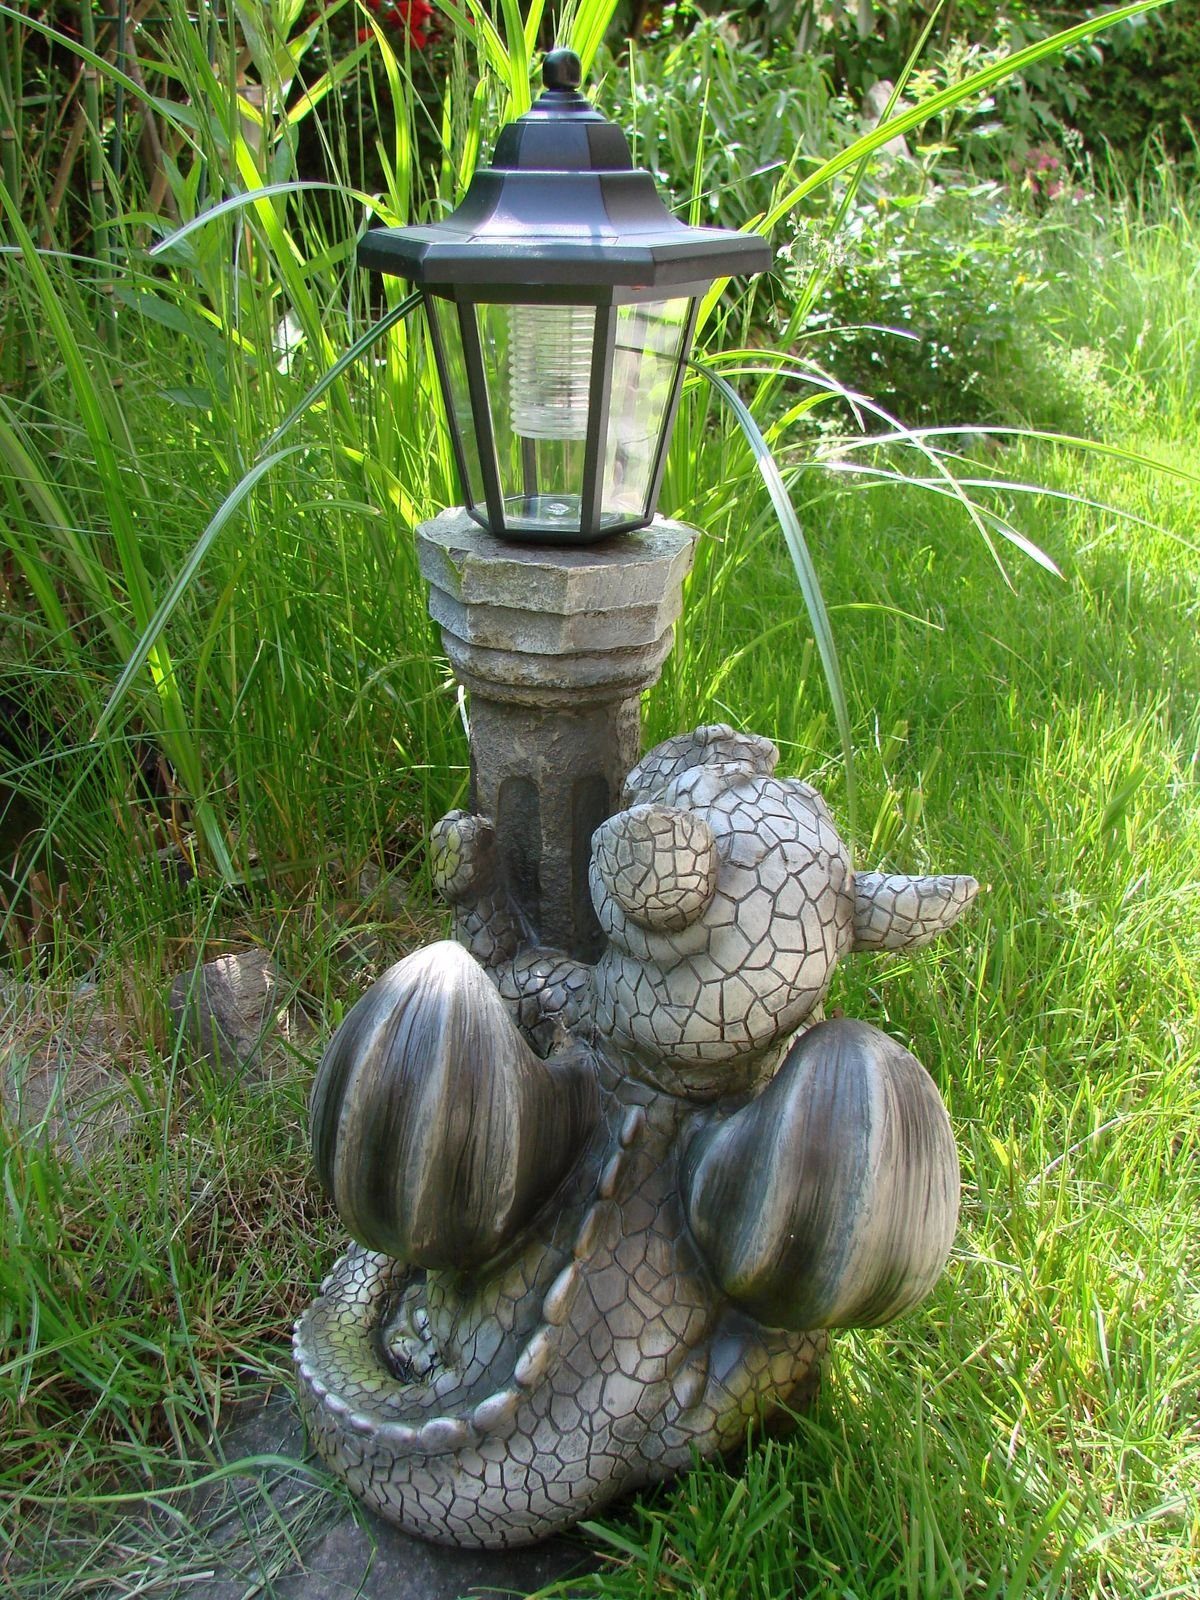 Kremers Schatzkiste Gartenfigur Drache mit Solar Laterne für den Garten Drachenkind